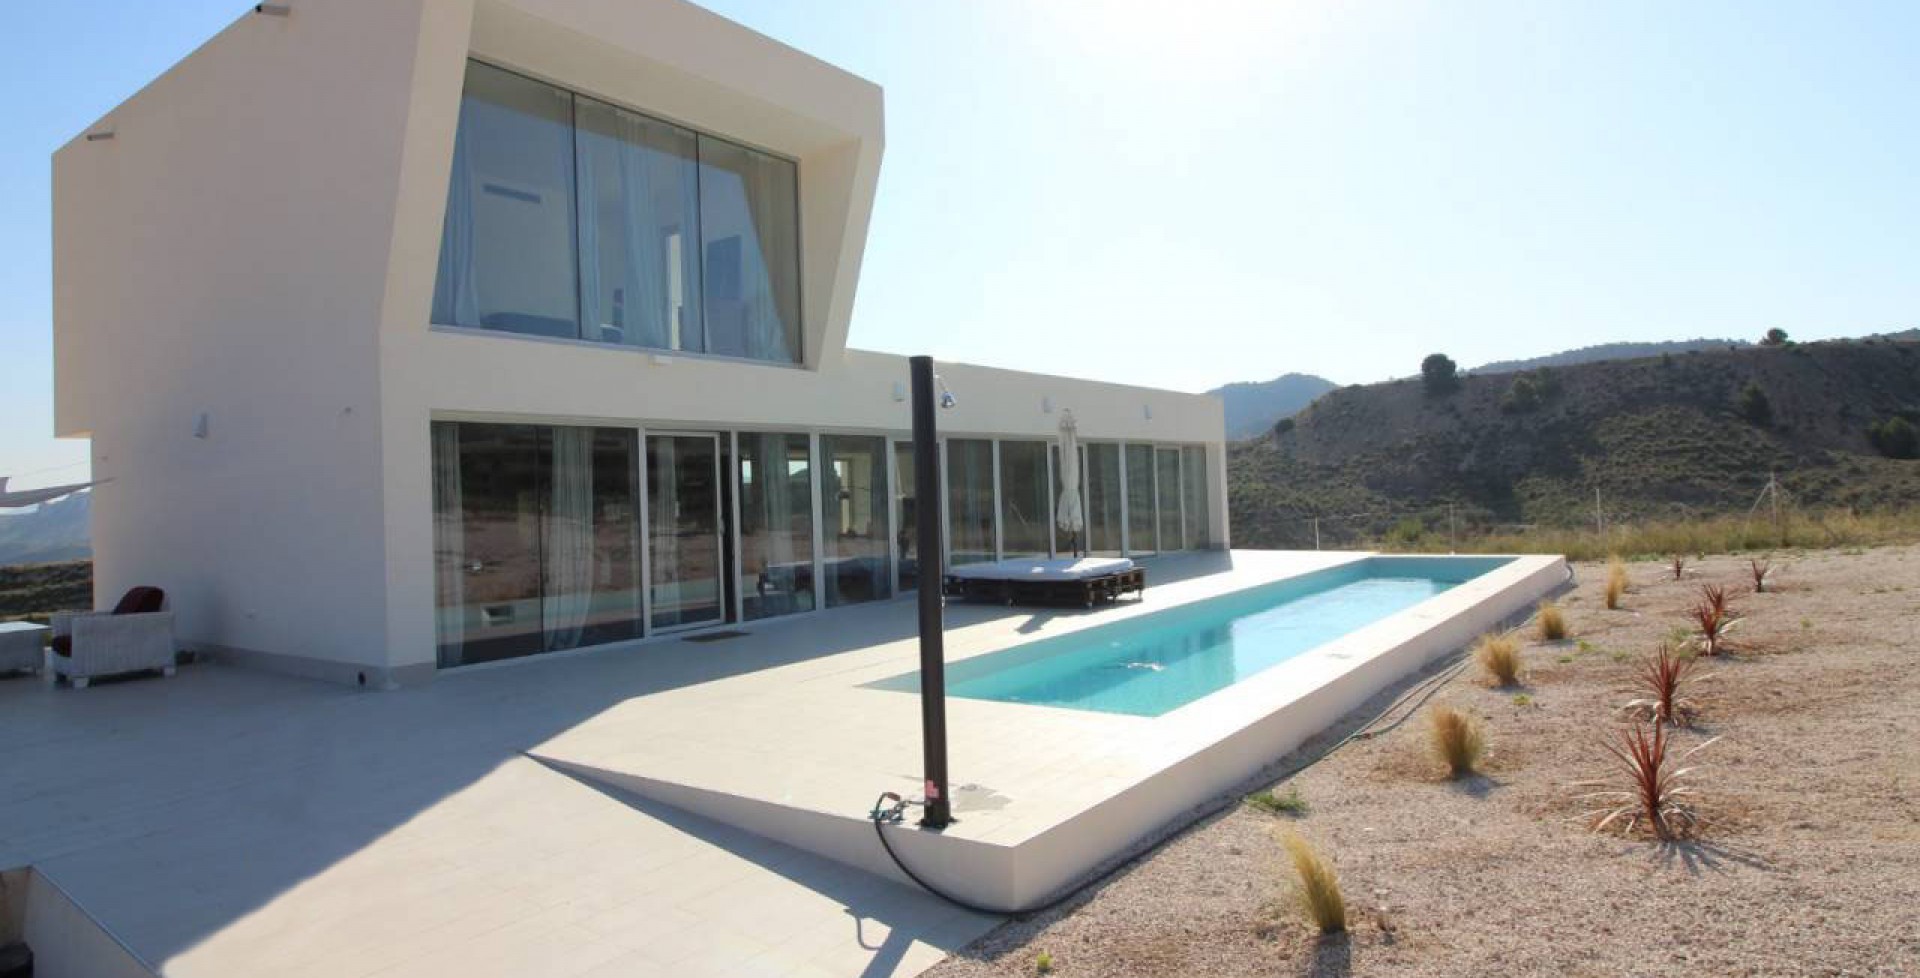 espectacular villa moderna de diseño con piscina 